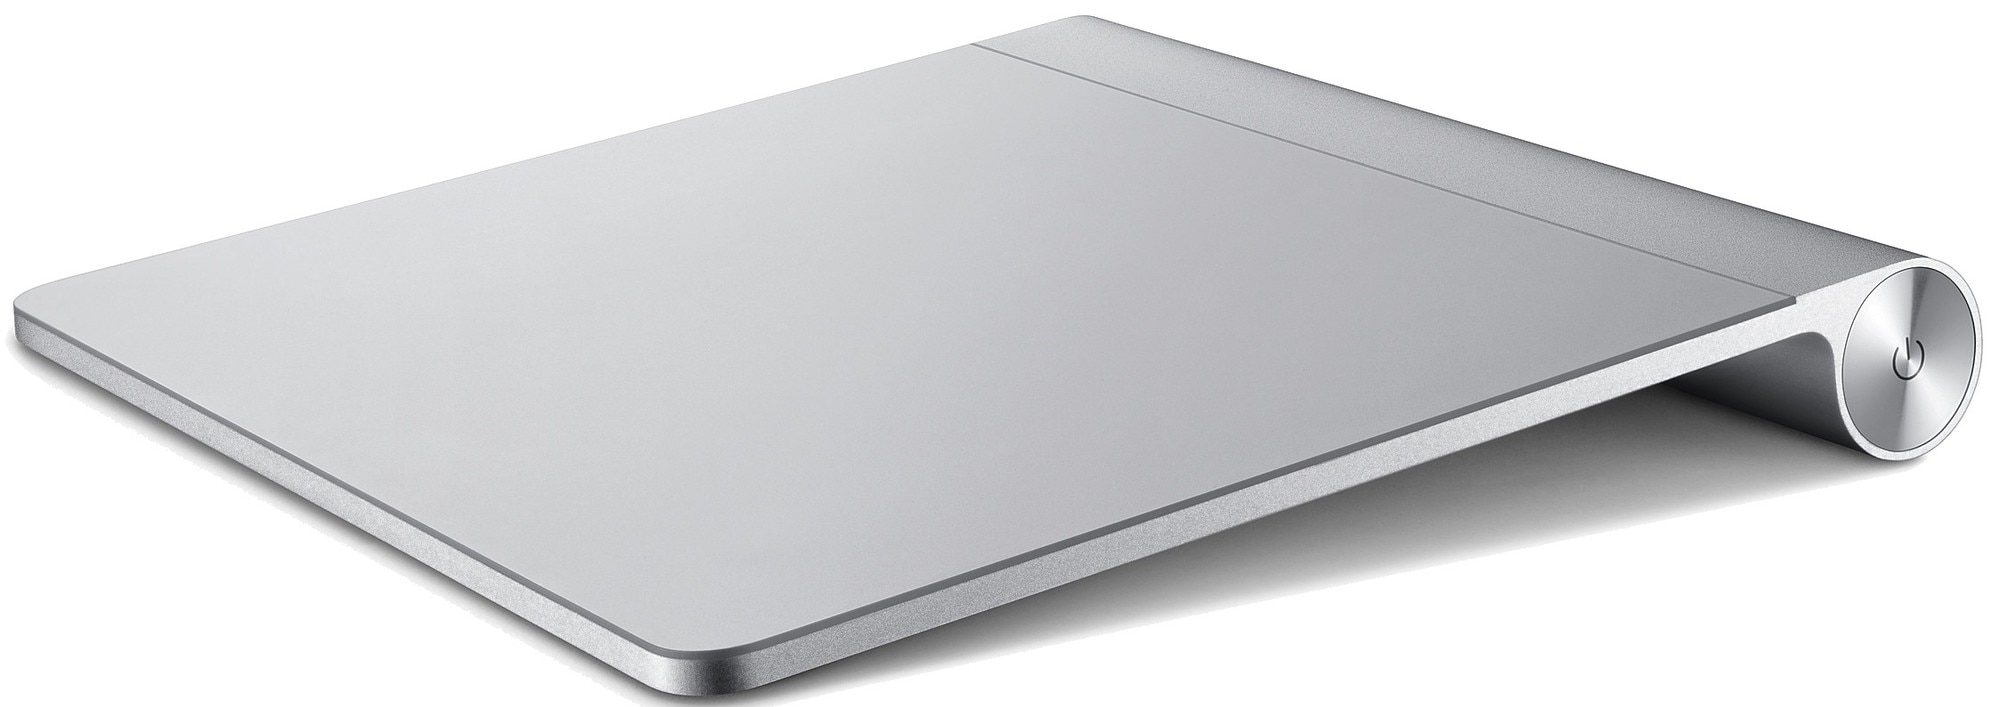 Apple Magic Trackpad - Mus og tastatur - Elkjøp